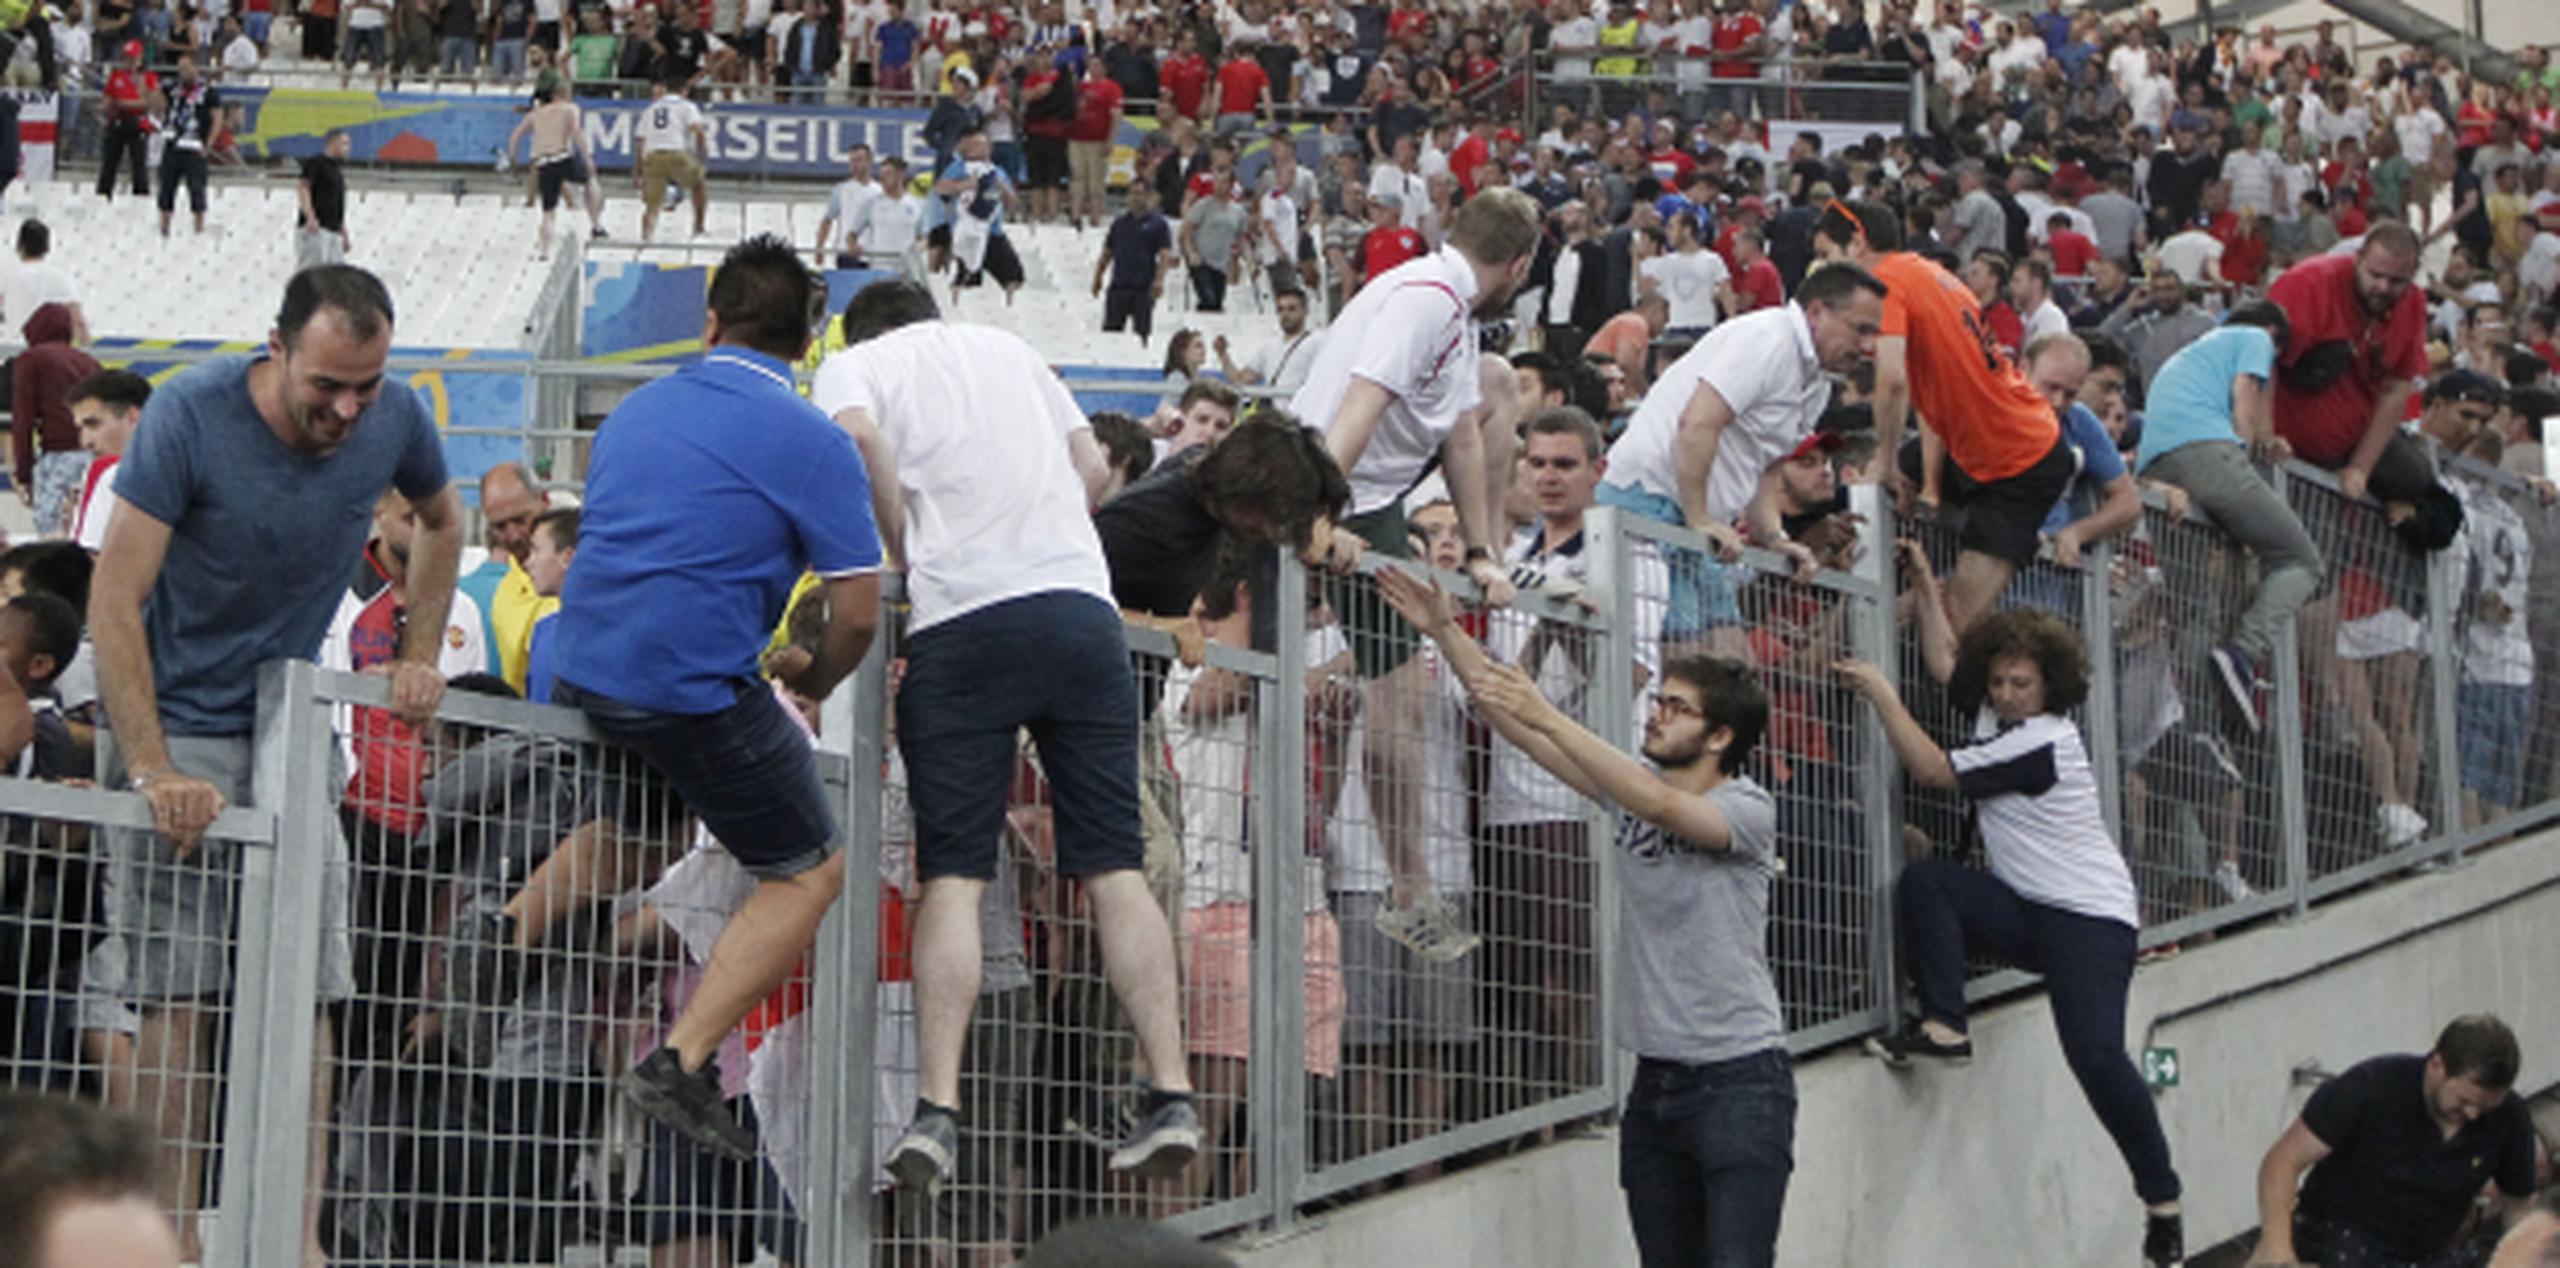 Espectadores brincan por encima de vallas protectoras para escapar de la violencia desatada en los graderíos por grupos de fanáticos al terminar el partido entre Inglaterra y Rusia. (AP/Thanassis Stavrakis)